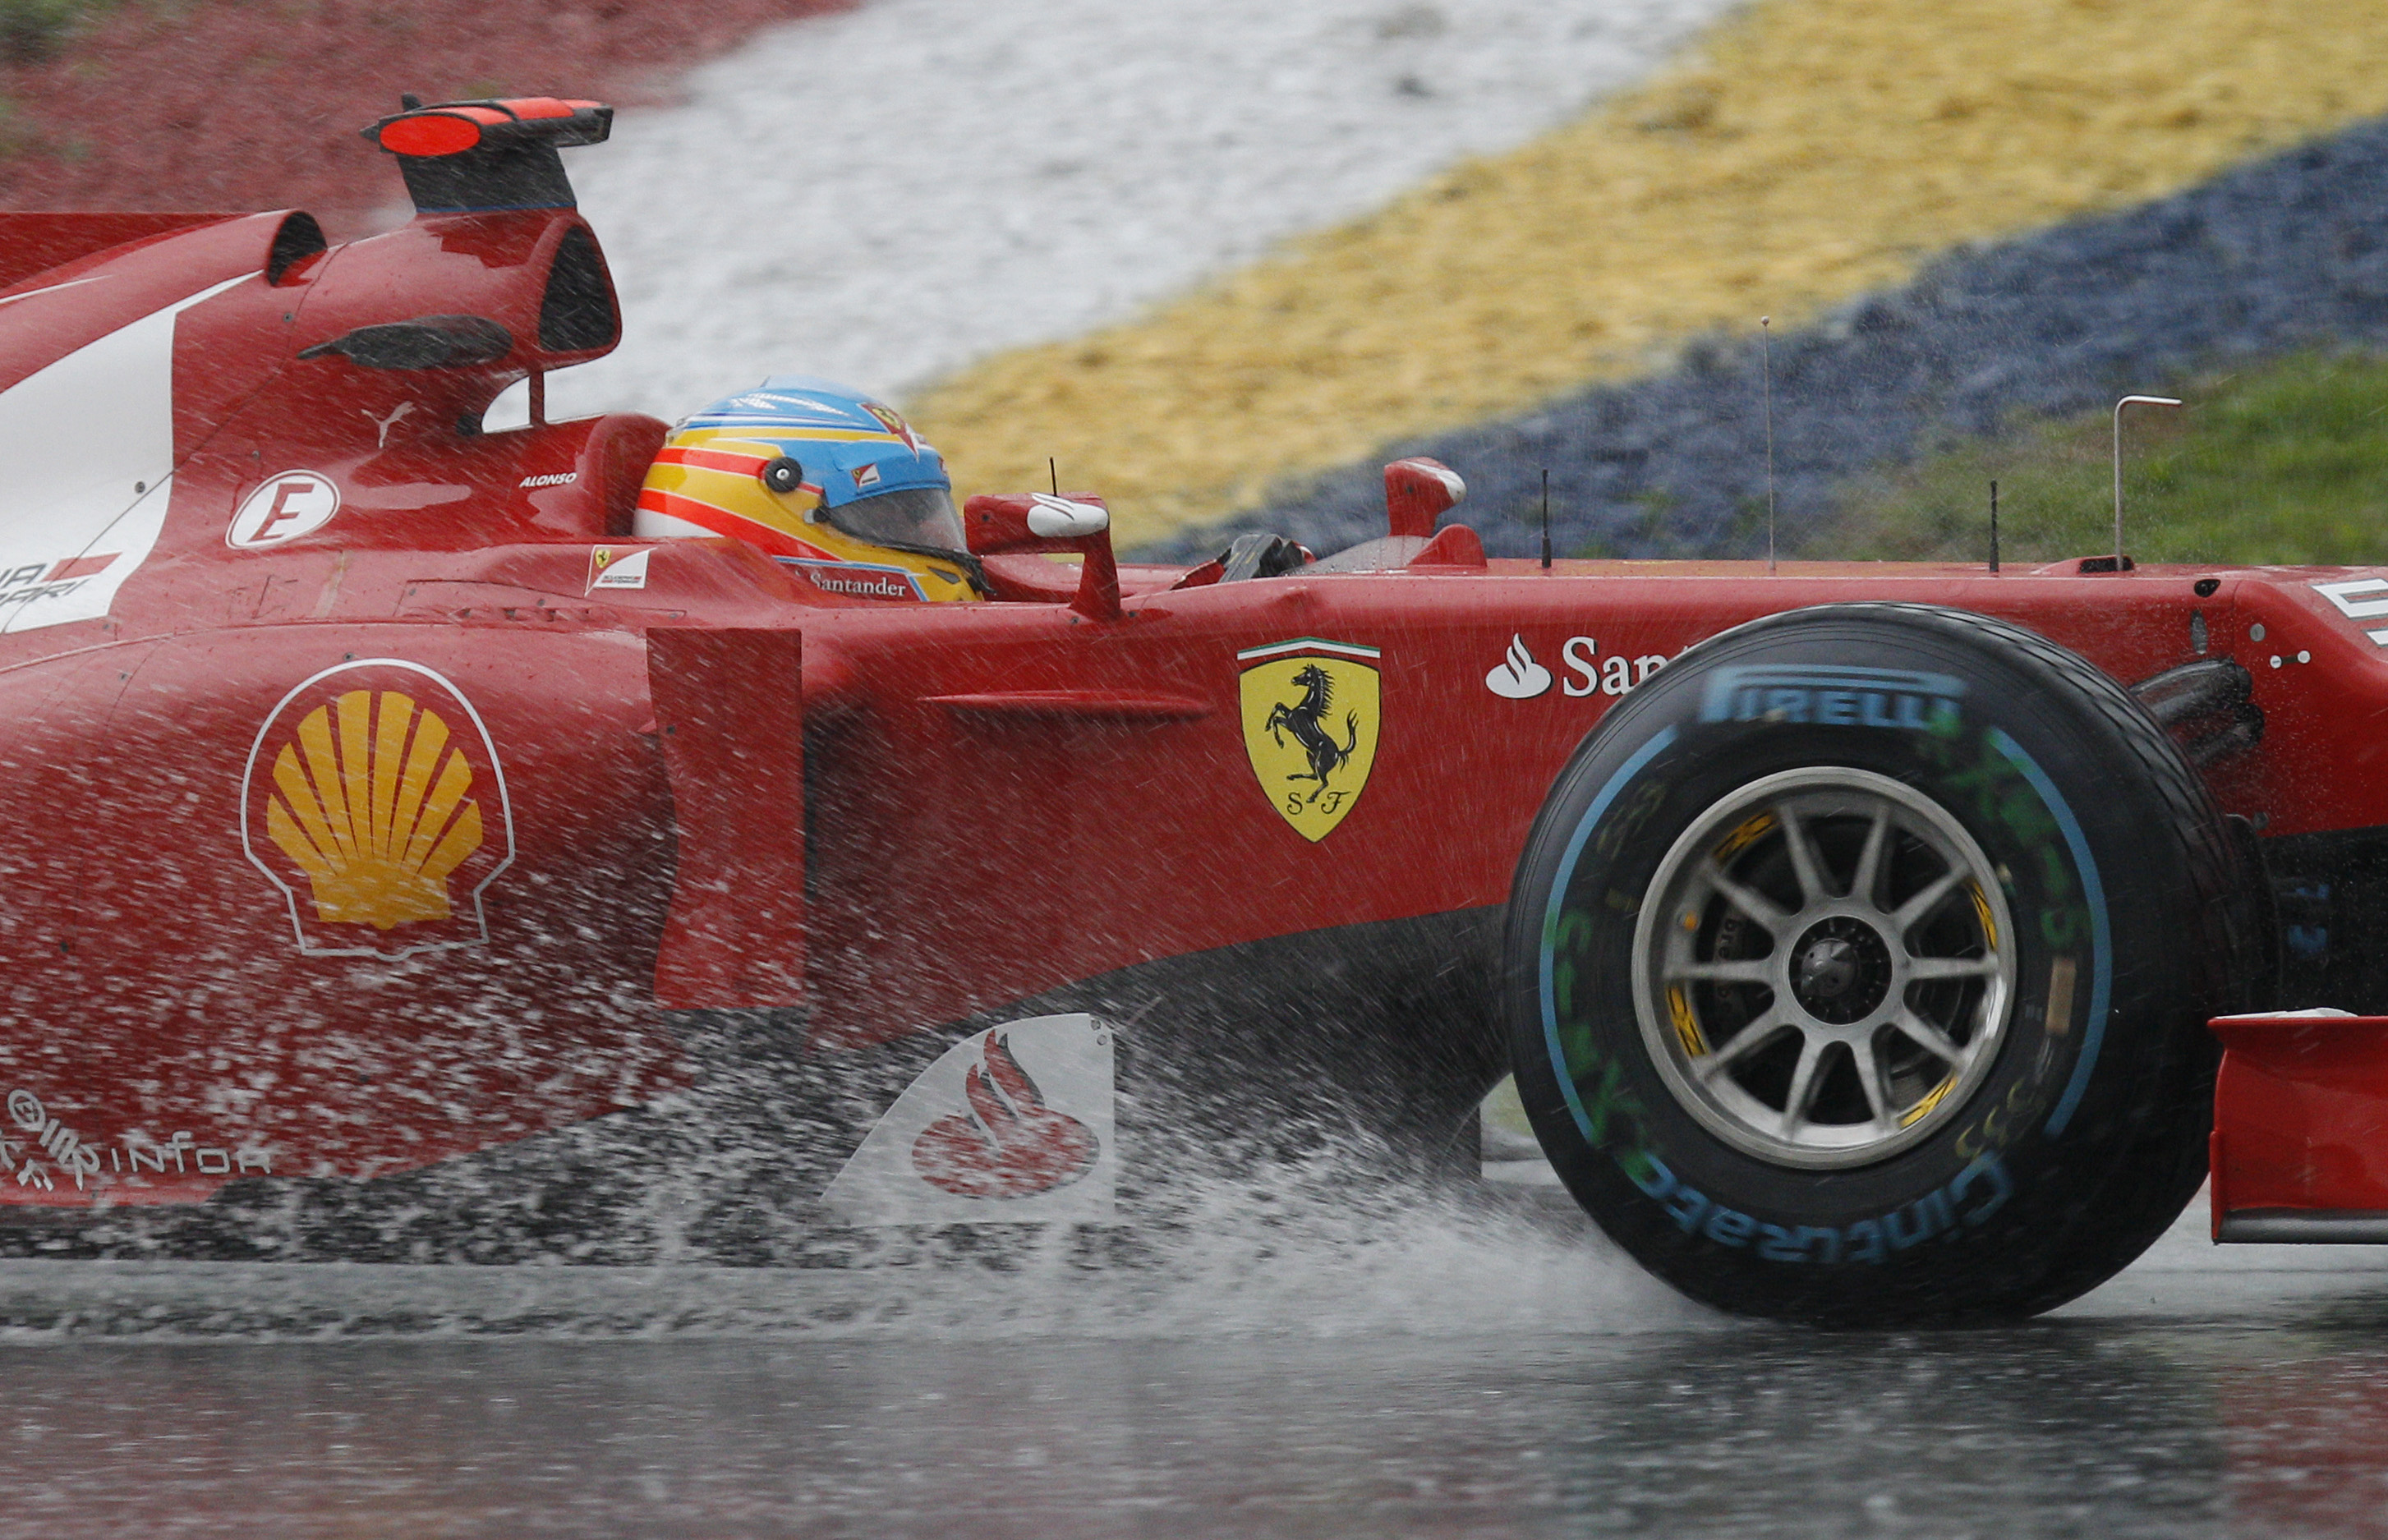 Det har pratats om att Ferrari är en i en svacka och till en början såg Fernando Alonso ut att ha det kämpigt.